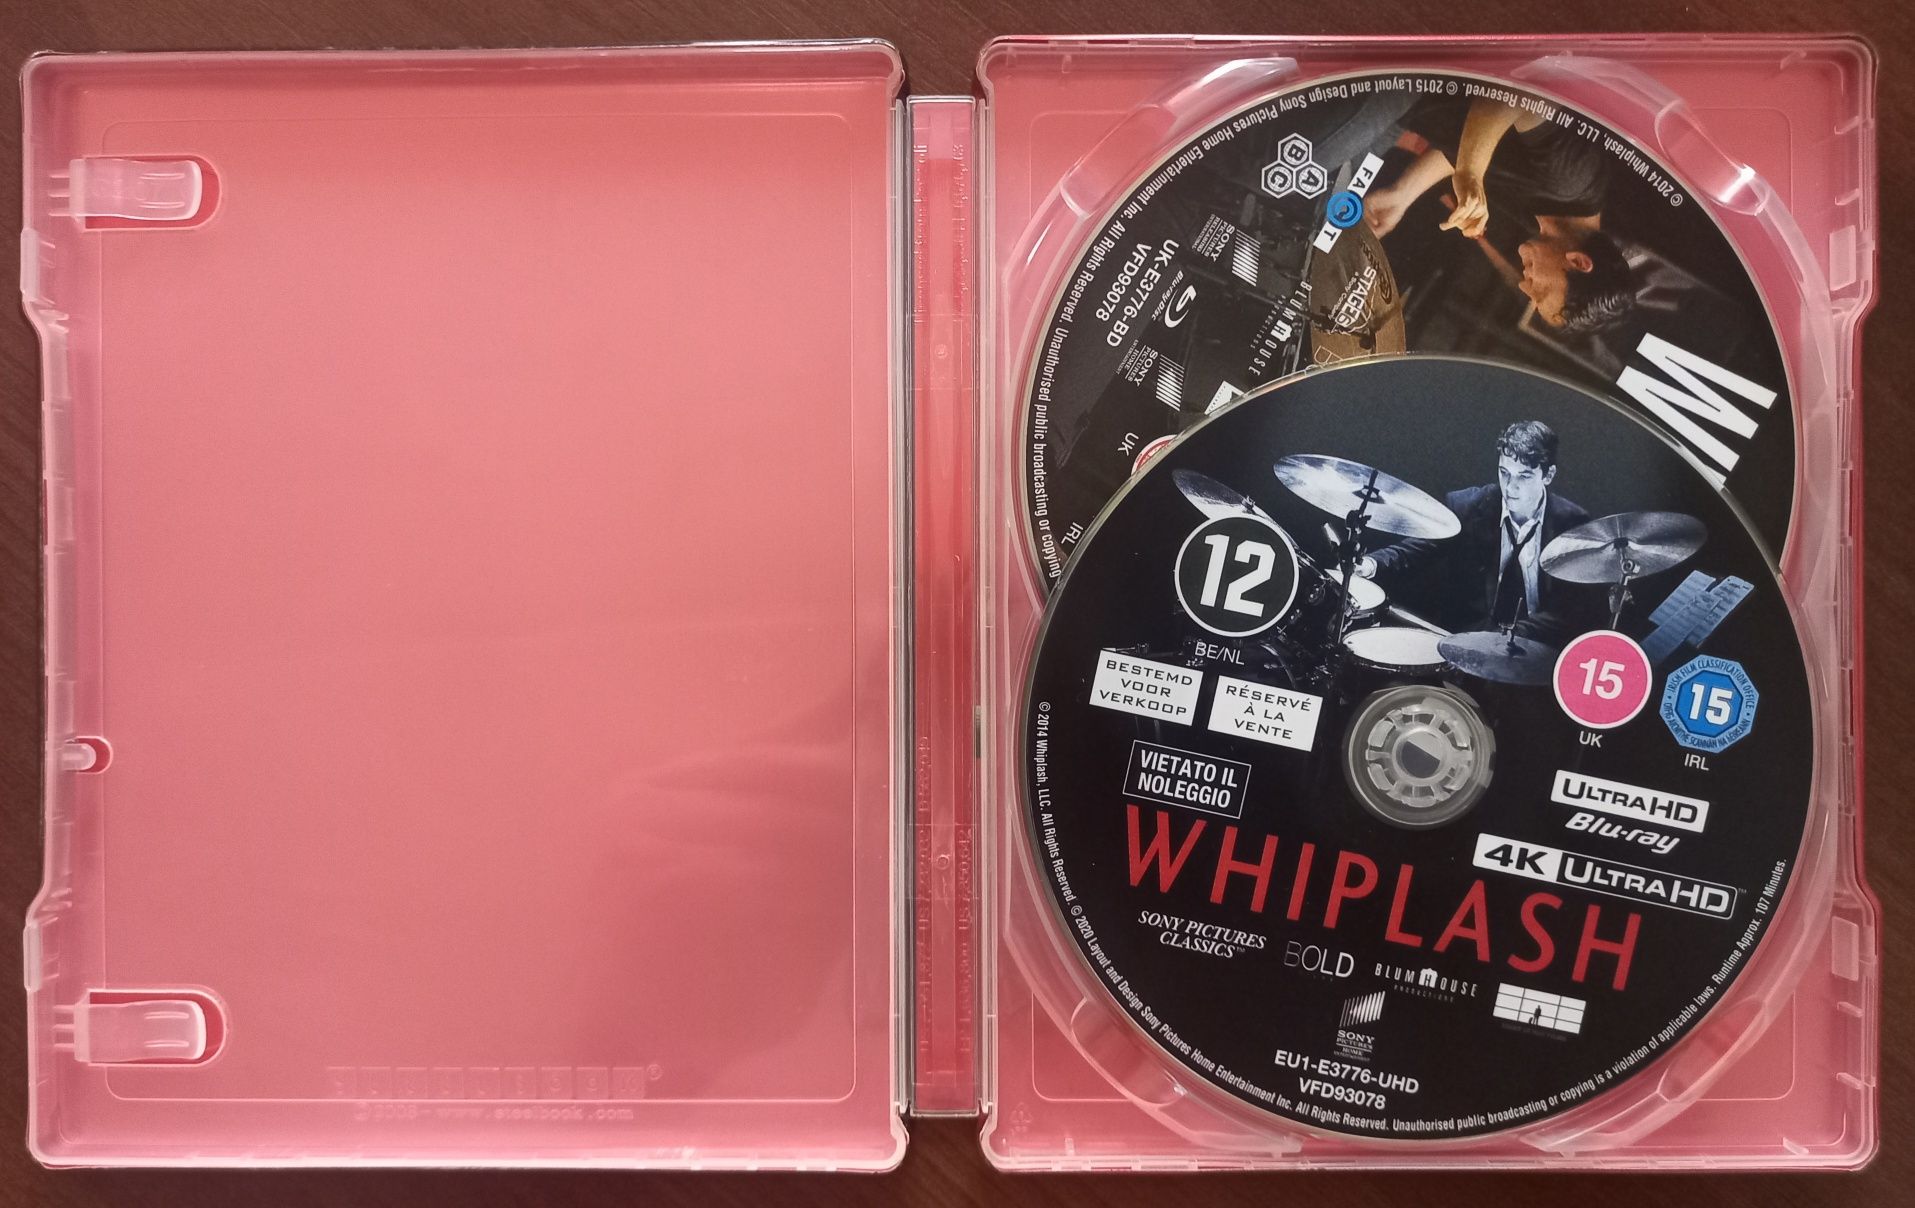 Whiplash 4K (2014)(1xBR 4K+1xBR) Steelbook UK (POLSKIE NAPISY, LEKTOR)